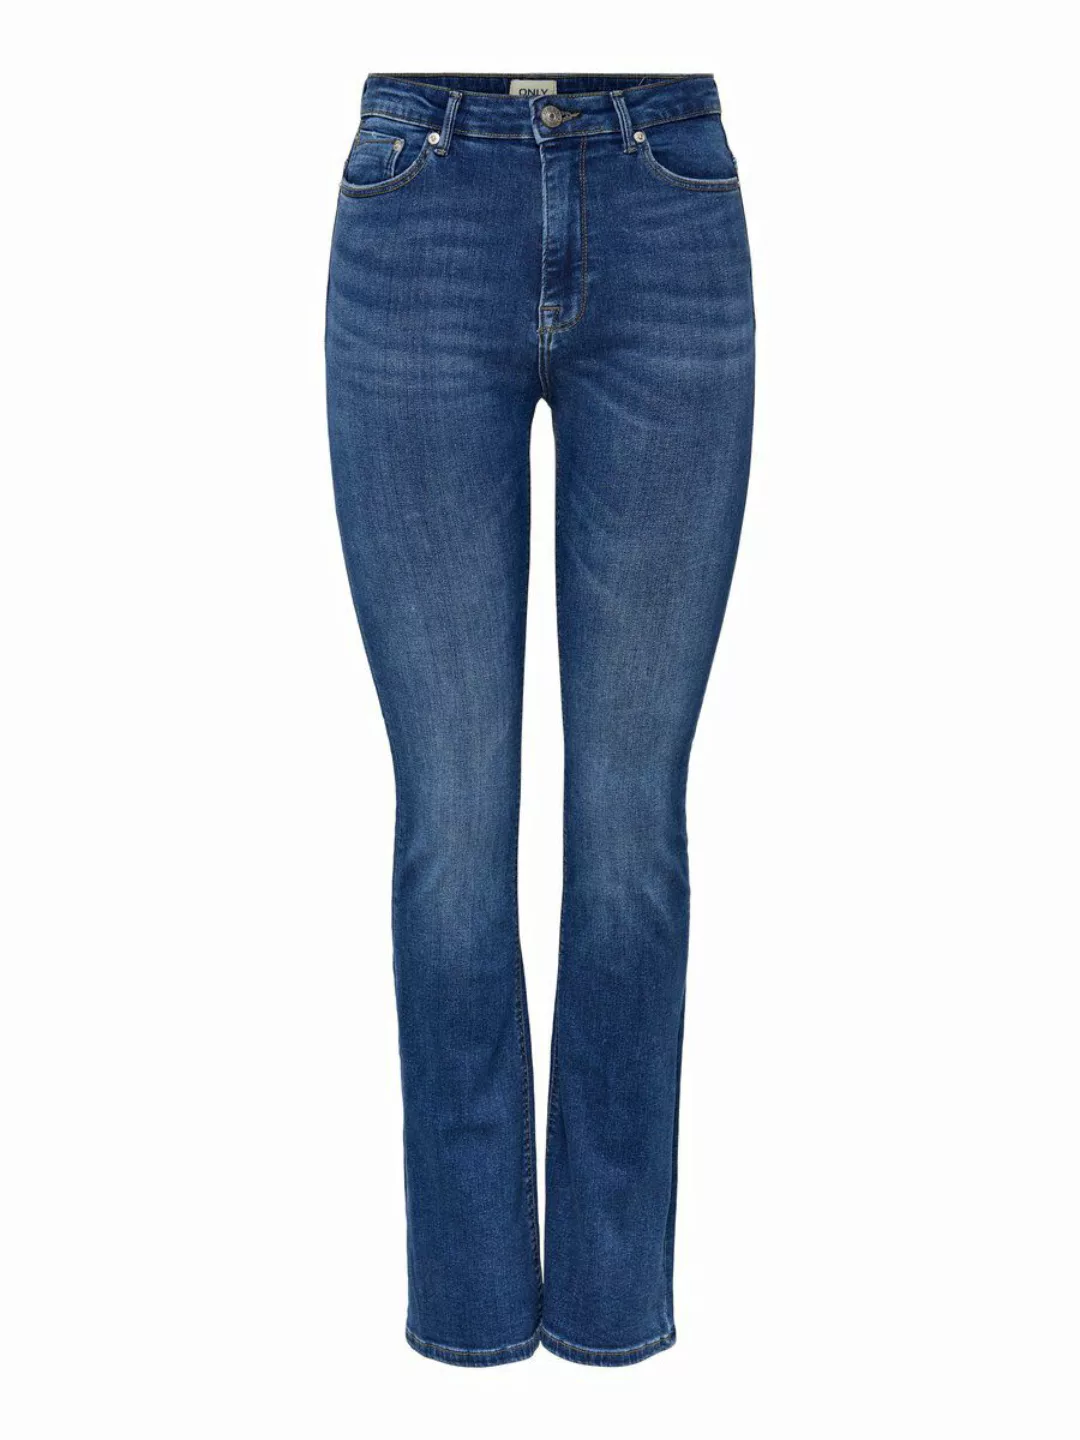 Only Paola Life Flared Azg0007 Jeans Mit Hoher Taille XL Medium Blue Denim günstig online kaufen